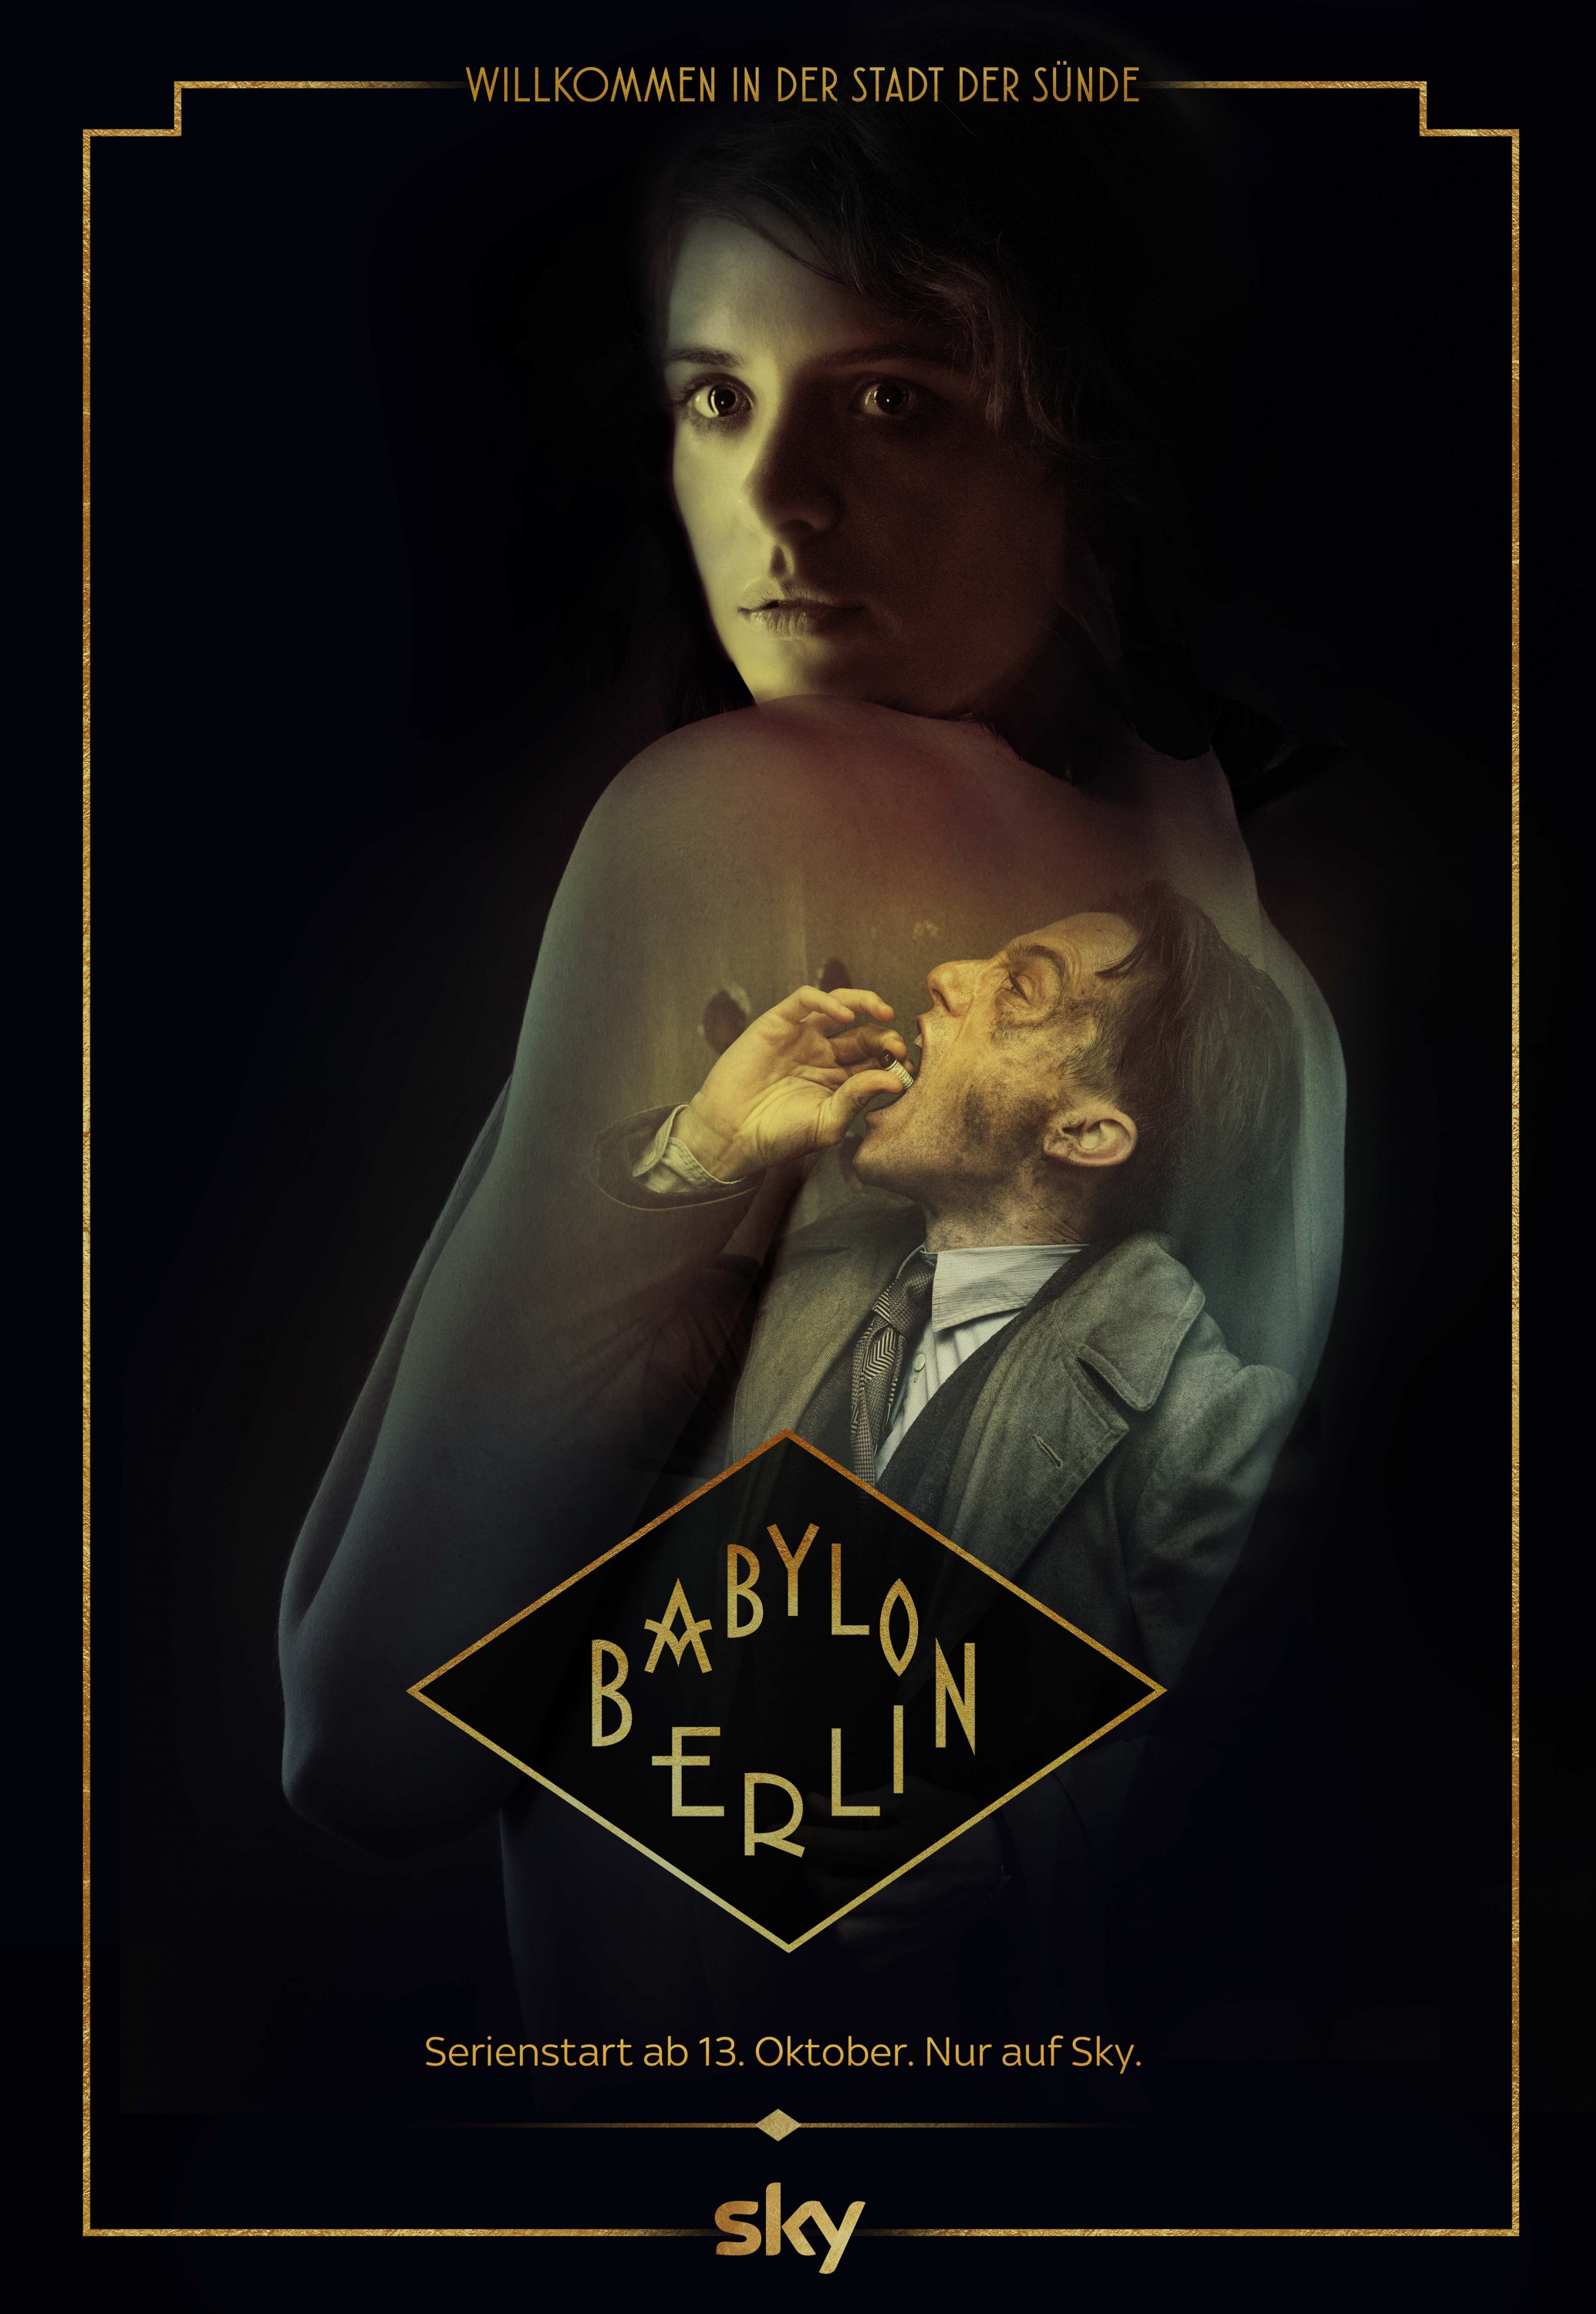 Mega Sized TV Poster Image for Babylon Berlin (#10 of 10)